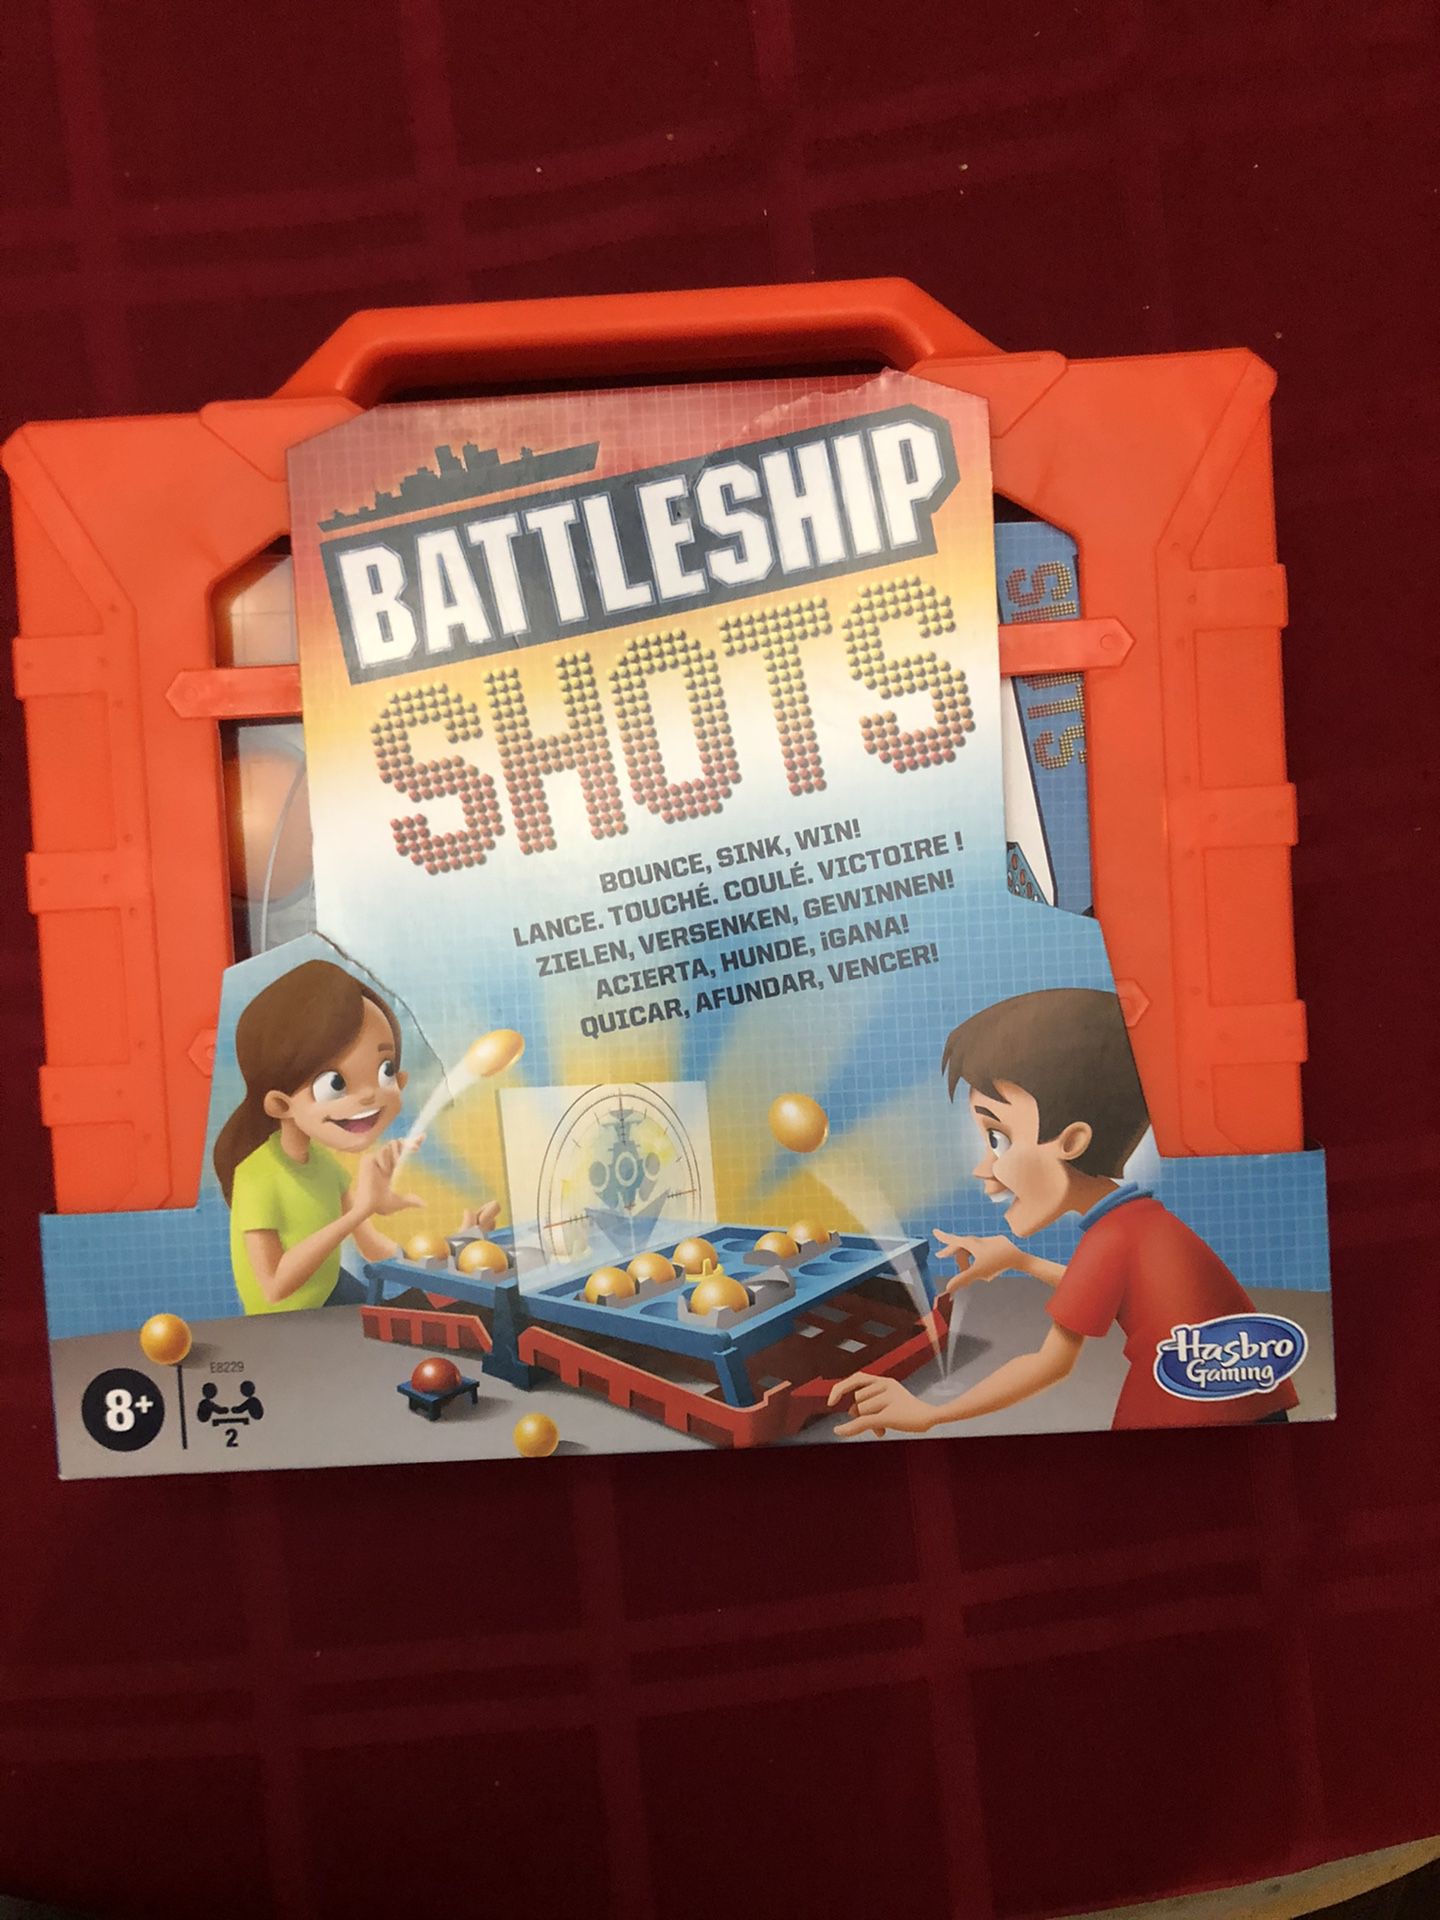 Battleship shots board game